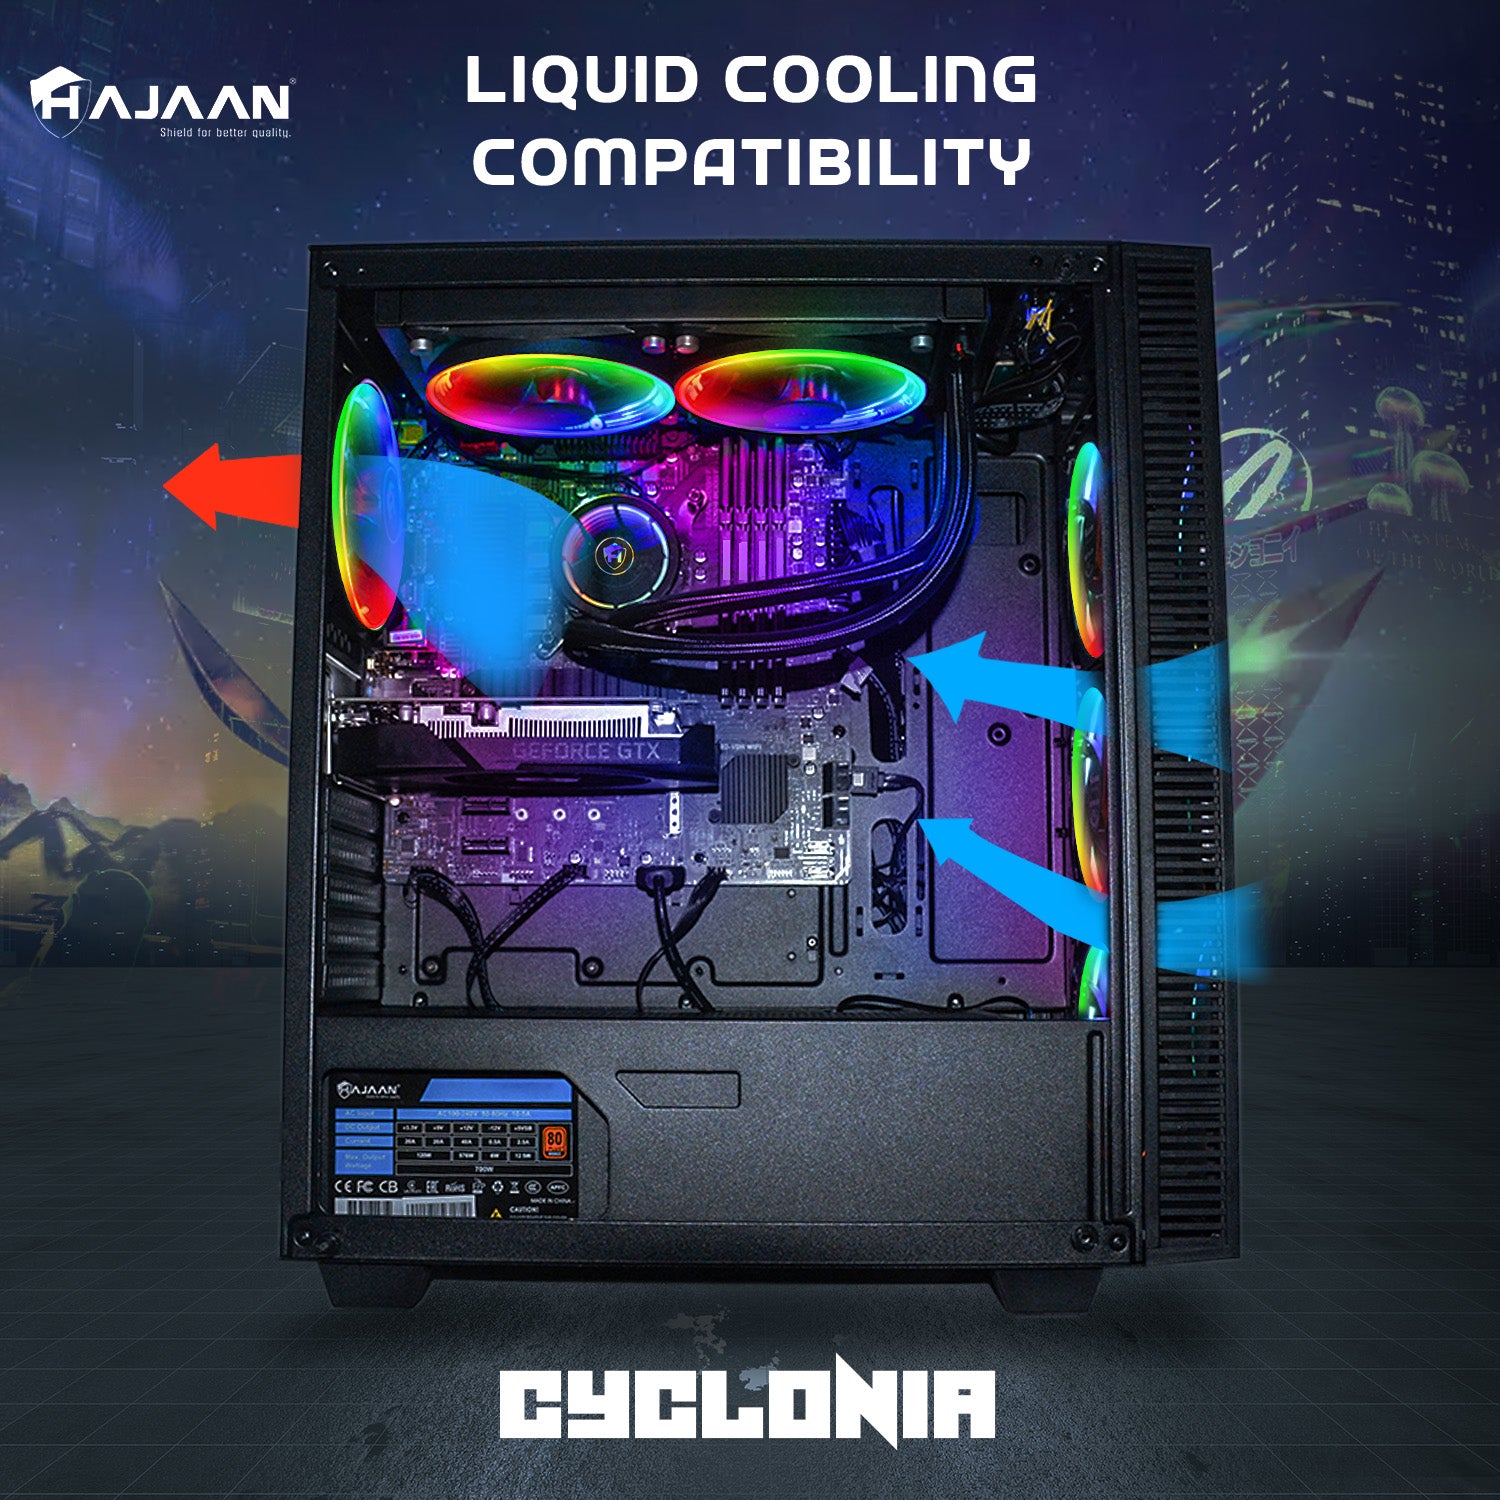 HAJAAN CYCLONIA Gaming PC - Liquid Cooled - Intel Core i7 10th/11th Gen Processor, 32 GB DDR4 RAM, 1 TB NVMe, 4 TB HDD Windows 11 Pro 64-bit